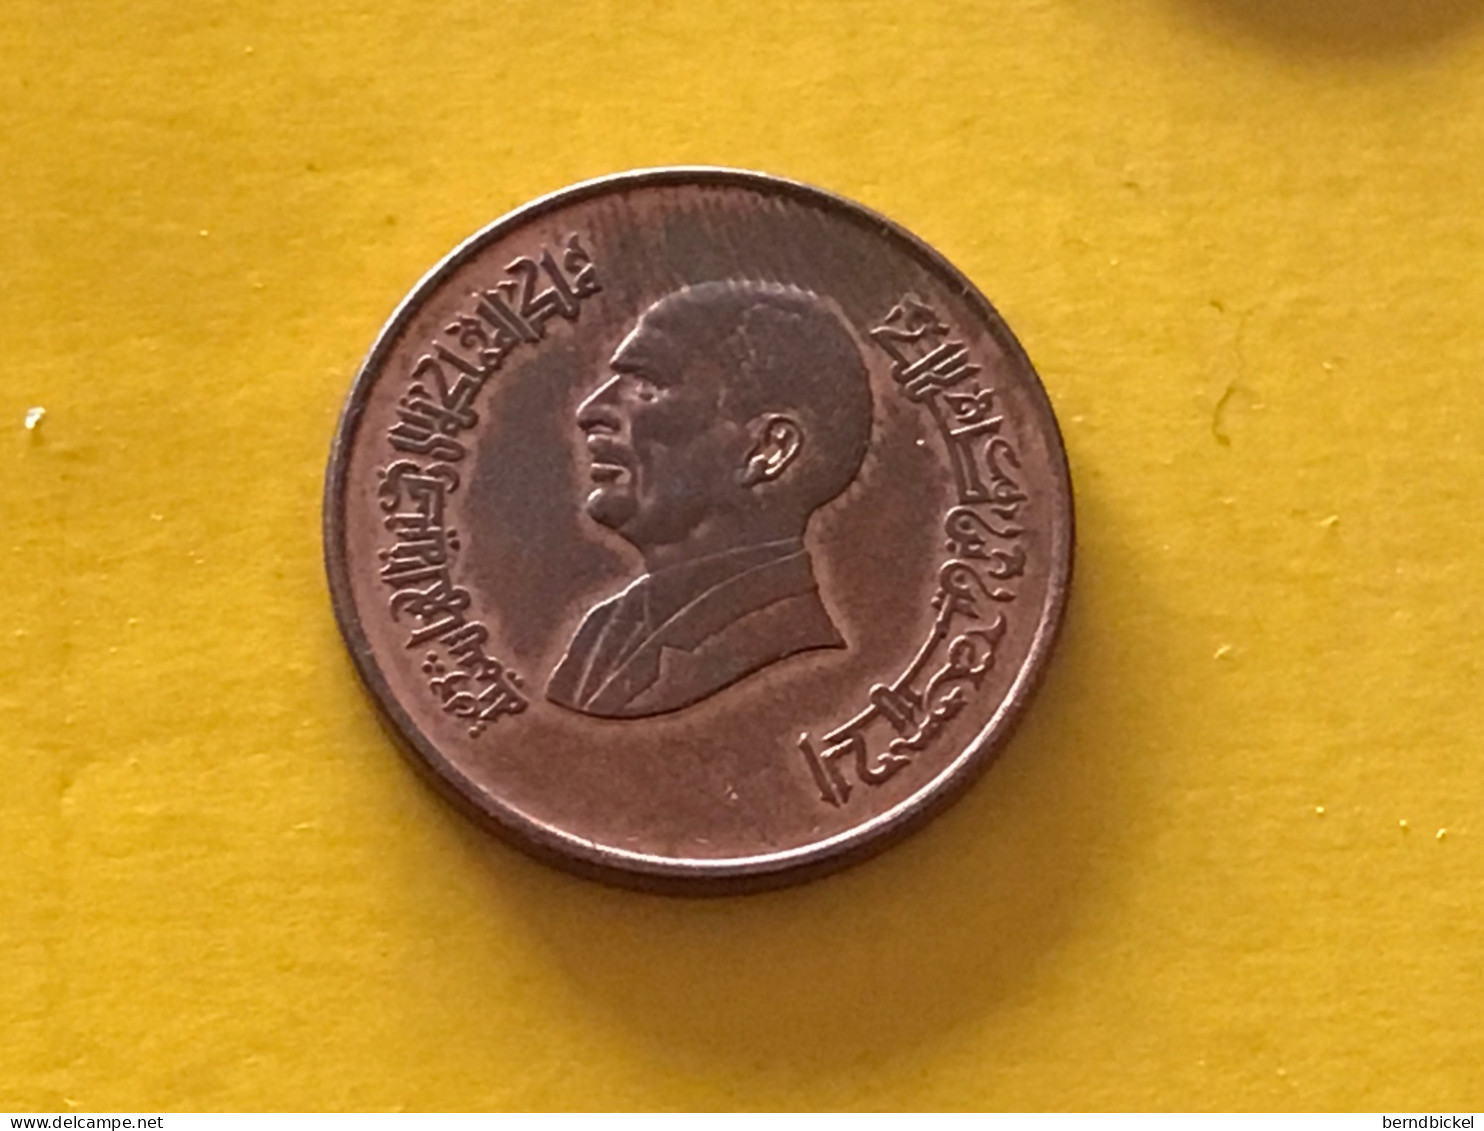 Münze Münzen Umlaufmünze Jordanien 1/2 Quirsch 1996 - Jordanie